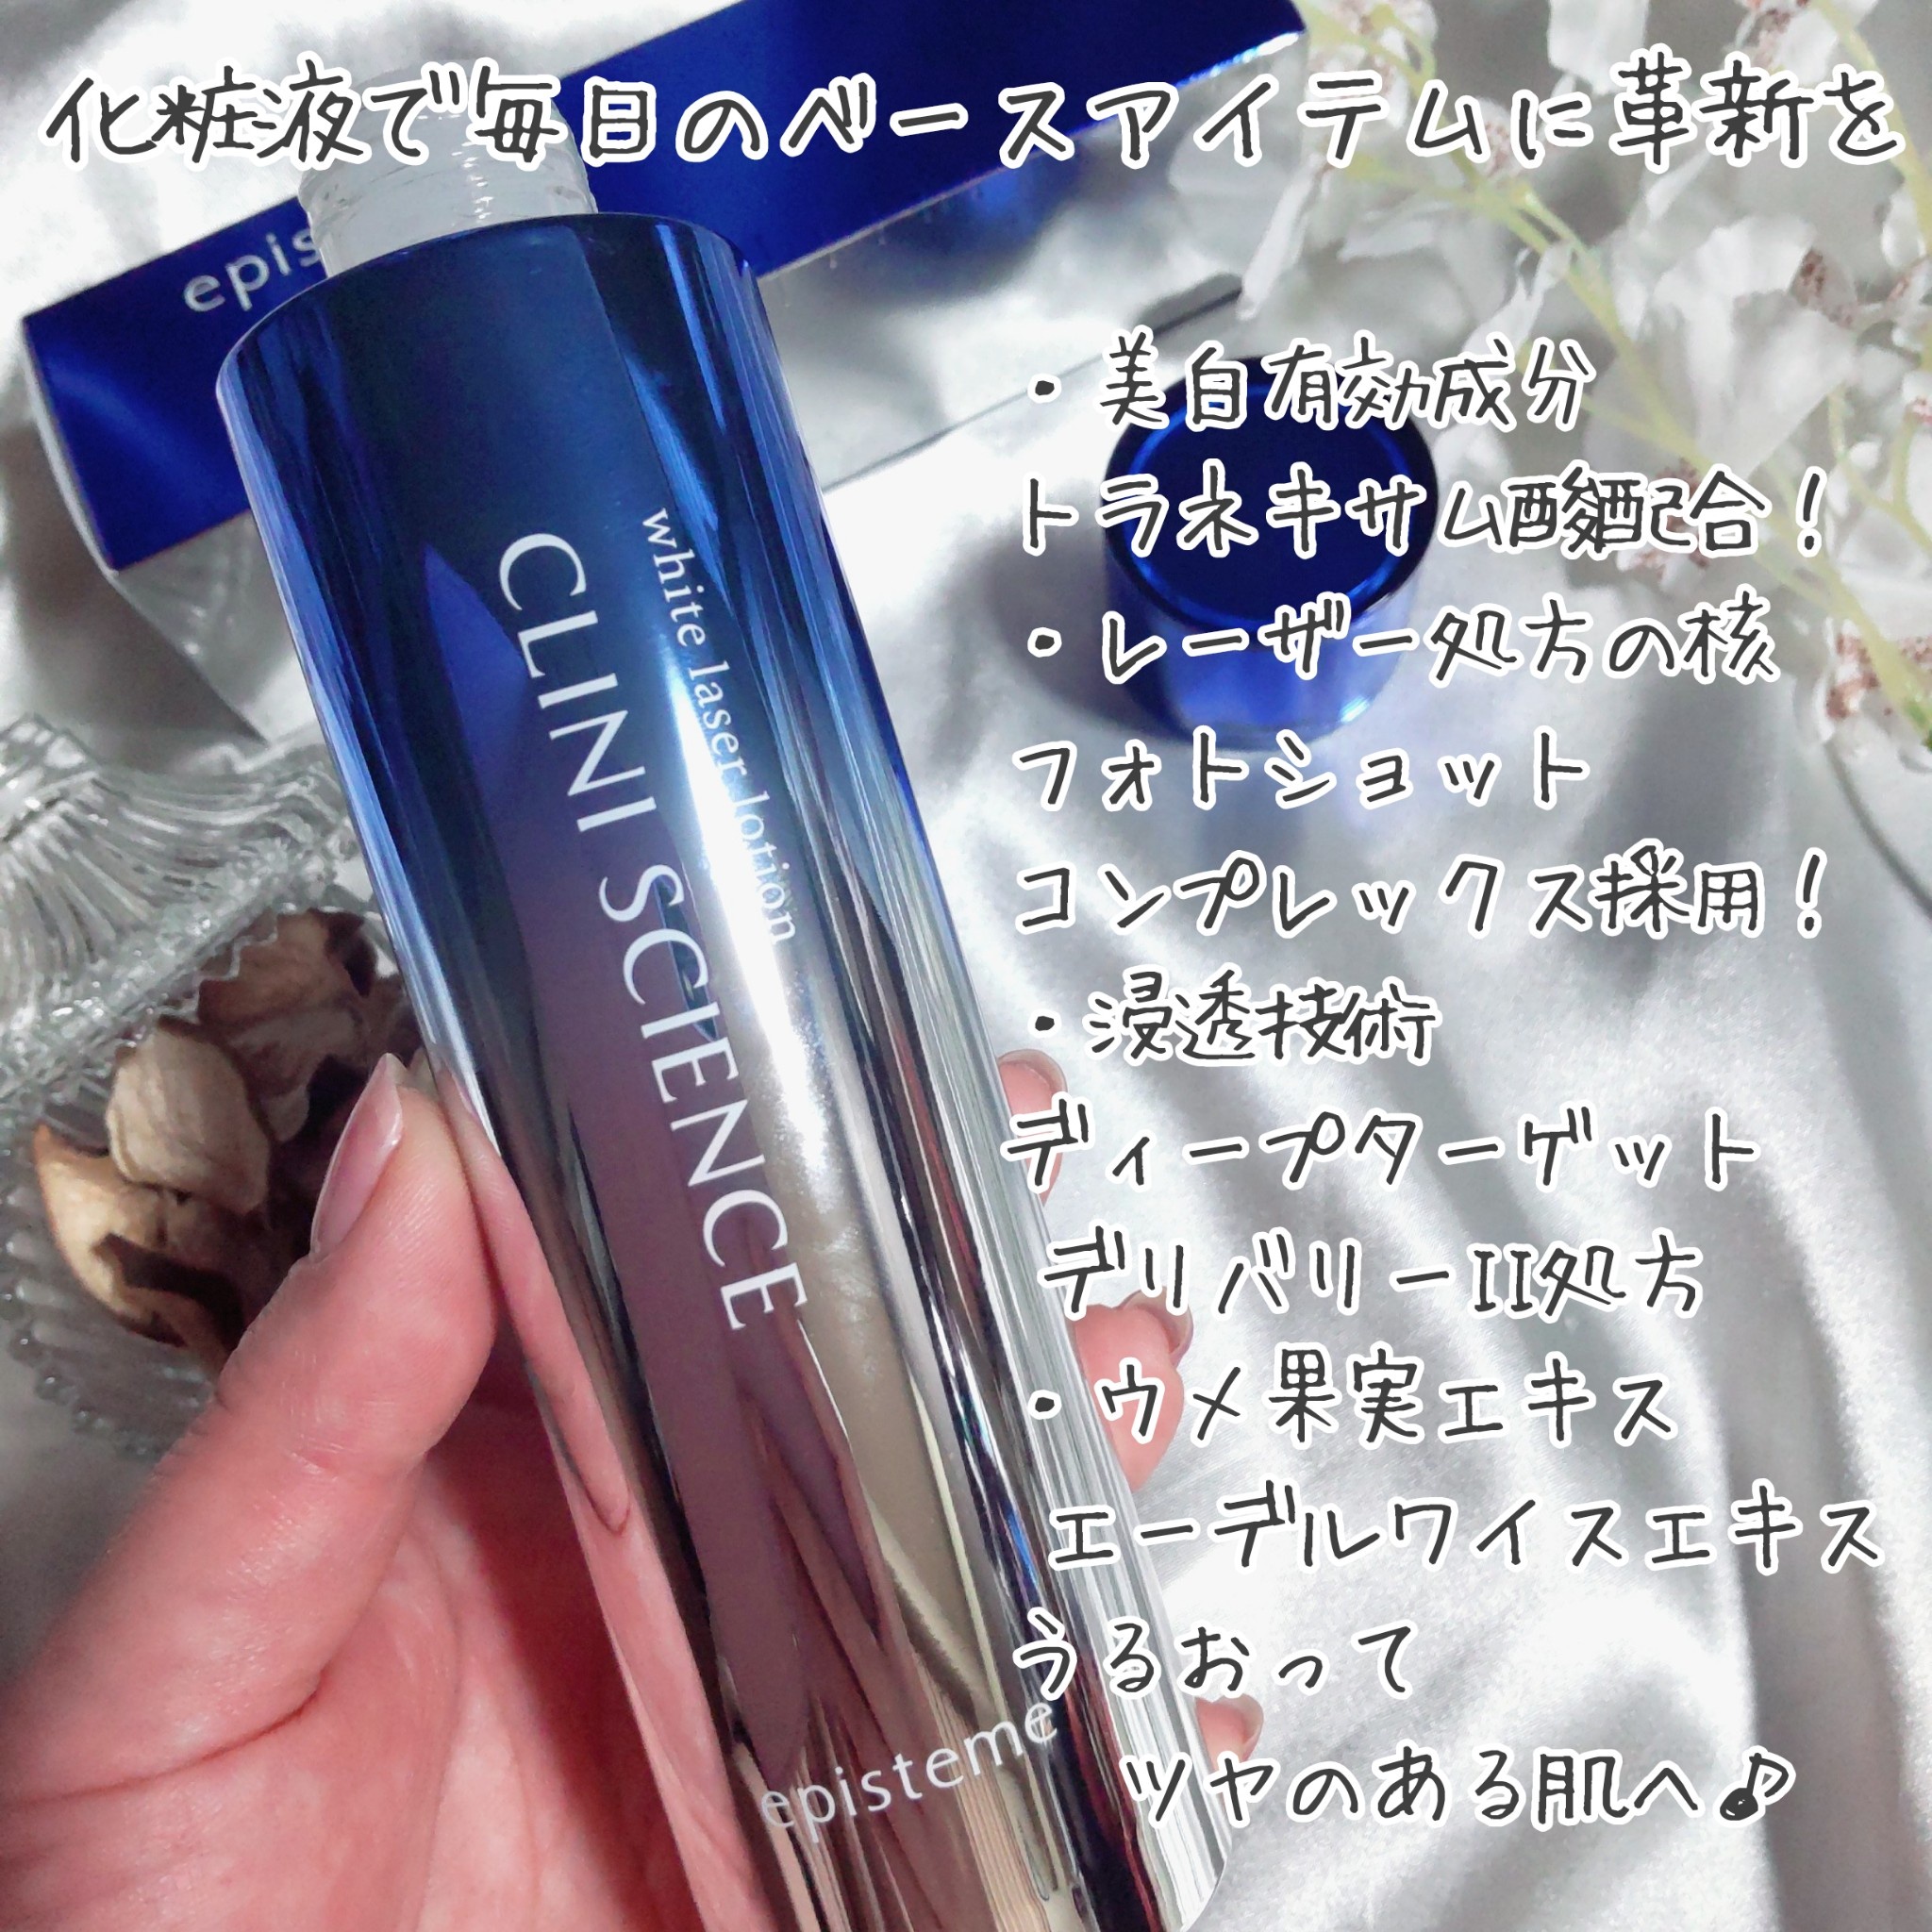 新入荷 ☆未開封☆ 化粧水 150ml ホワイトレーザーローション エピステーム 化粧水/ローション